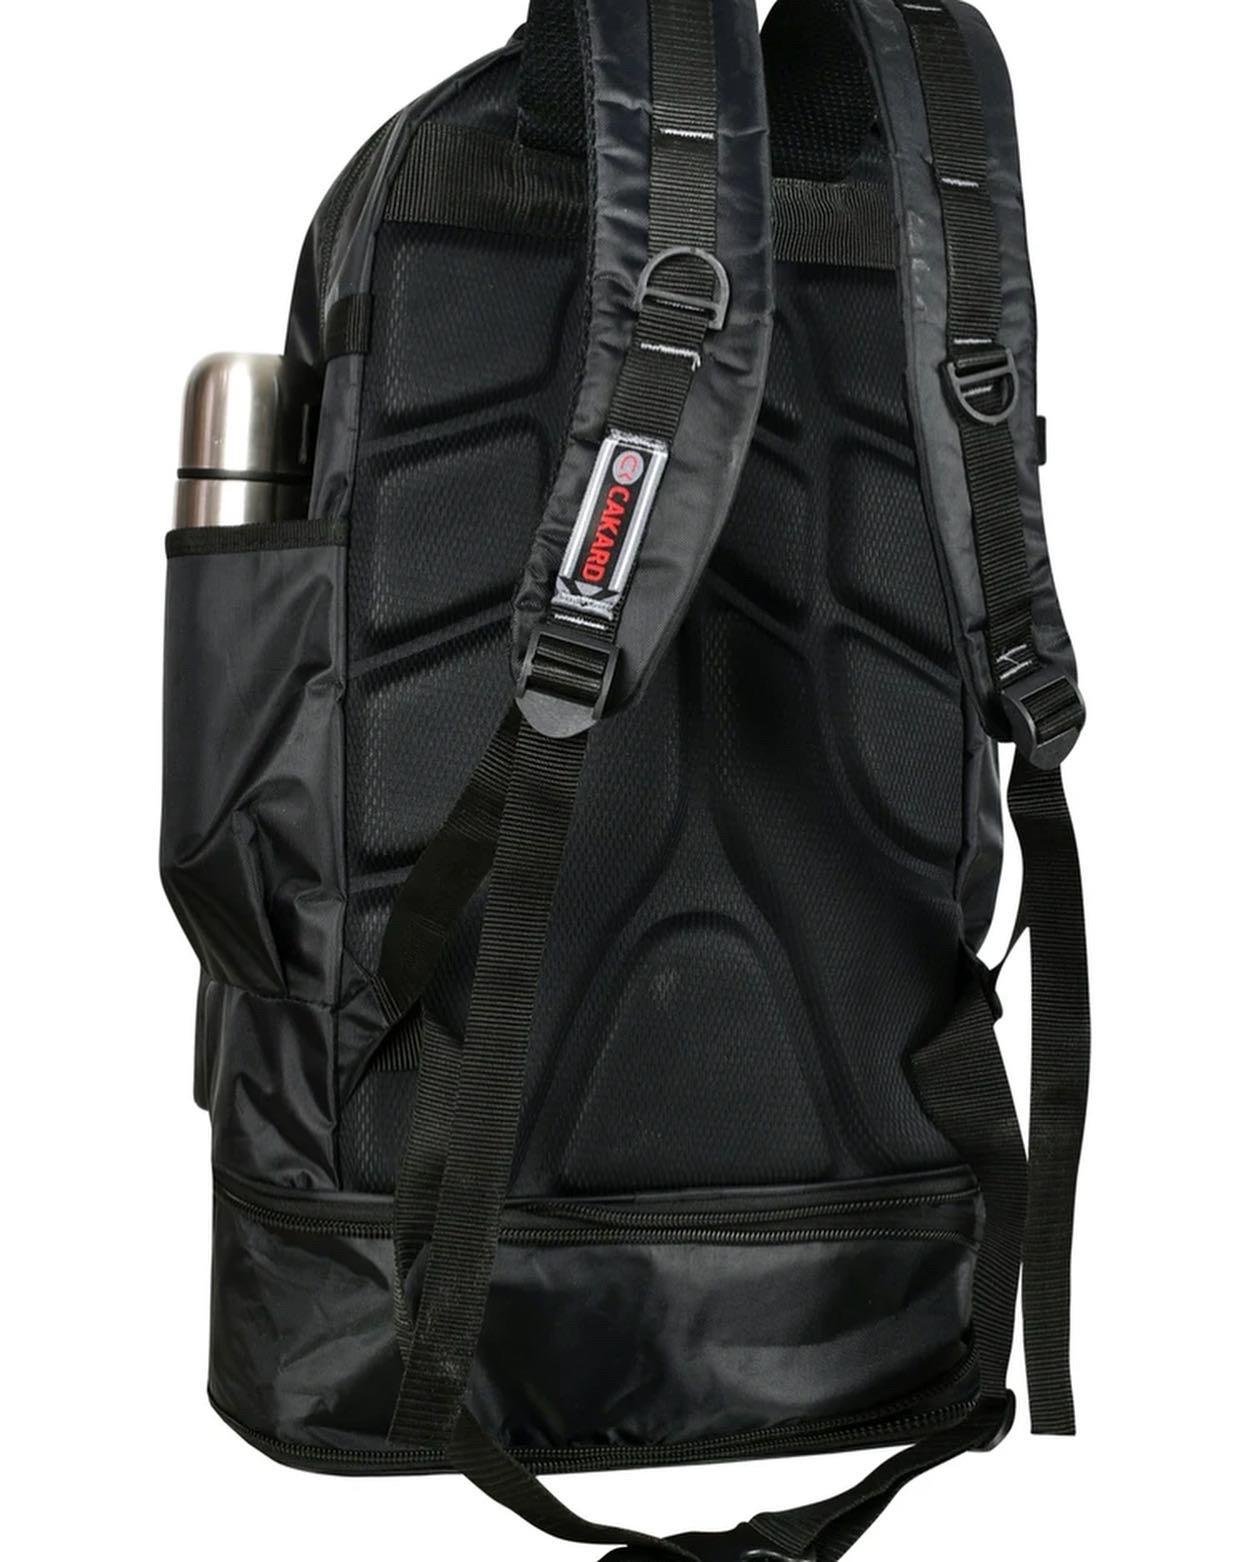 Körüklü dağcı cakard sırt çantası büyük ebat 65 boyu eni 33  |elizabell.com.tr